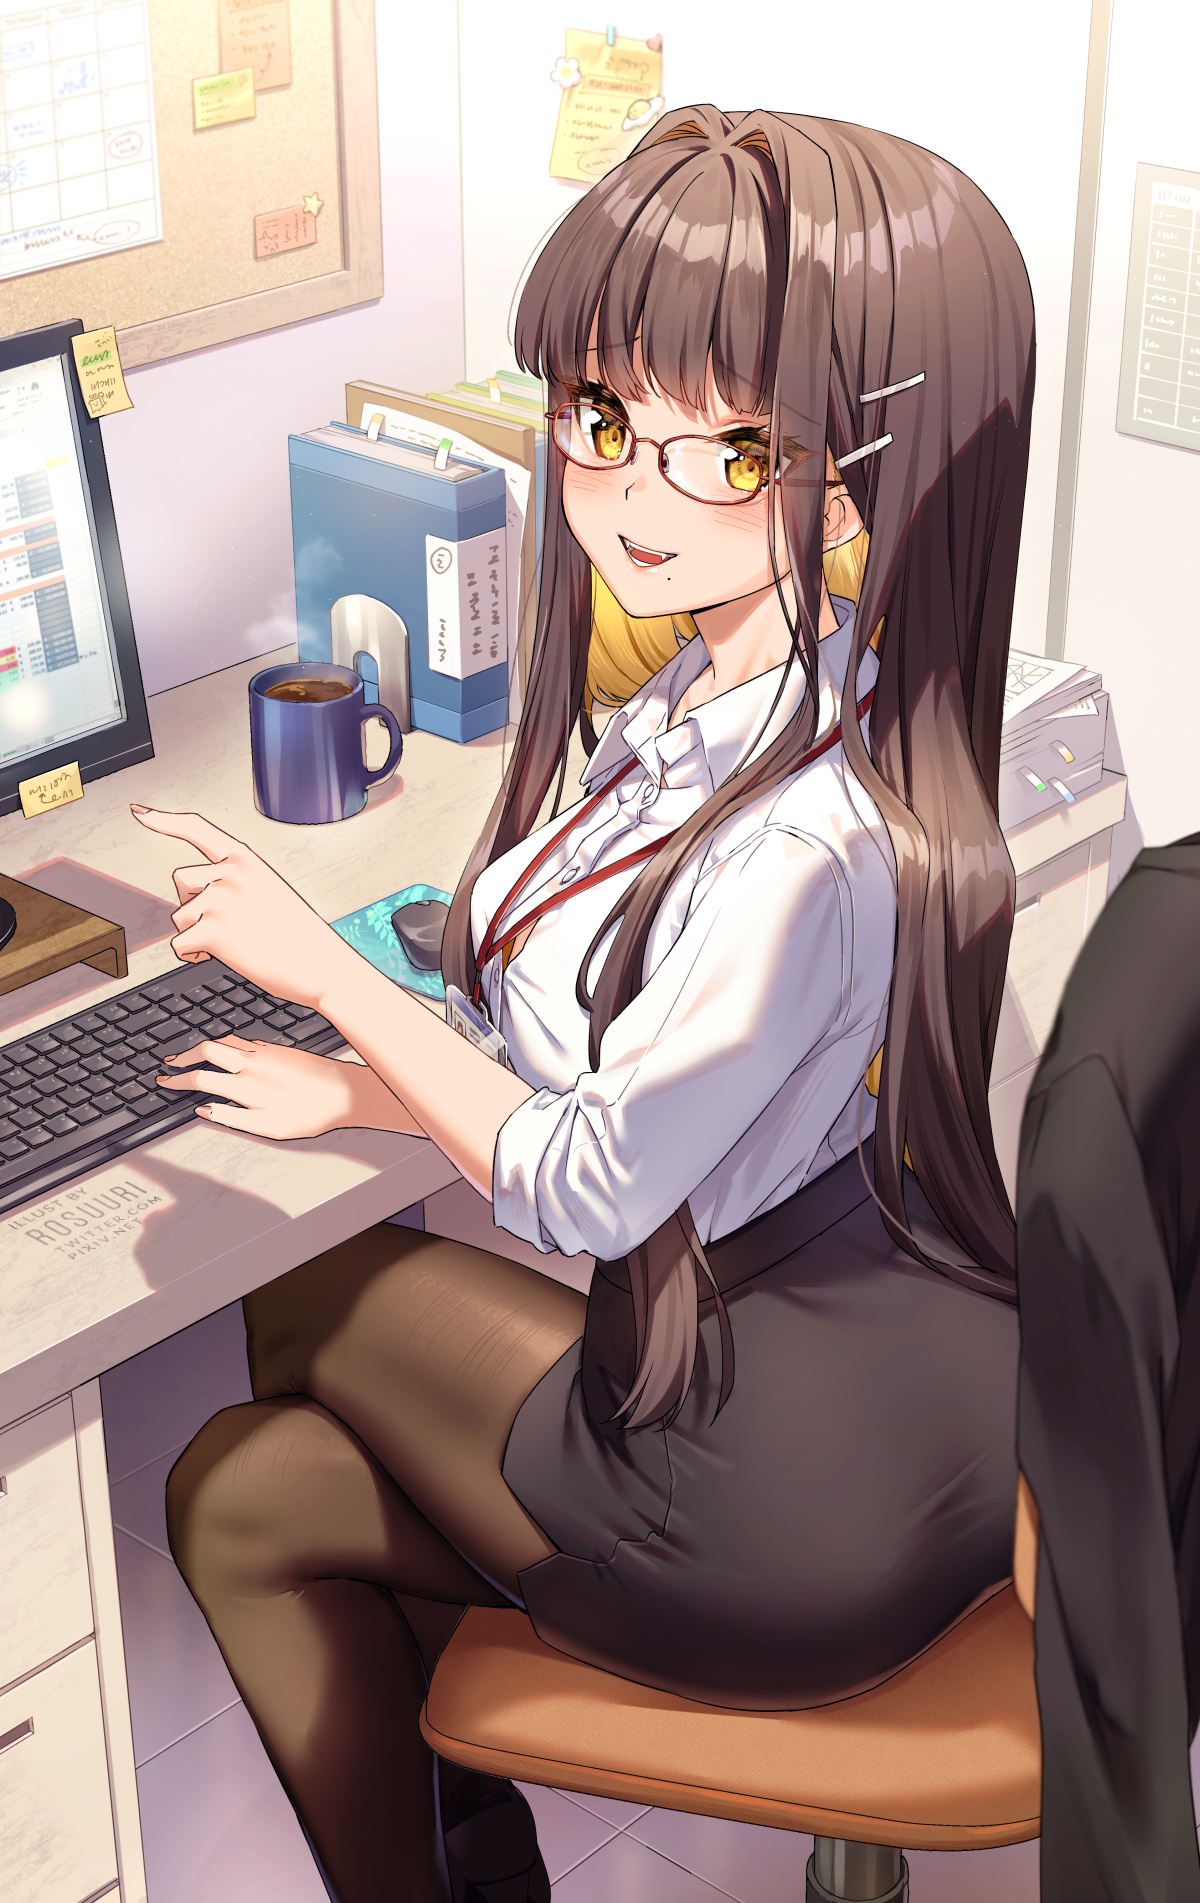 Anime Anime Girls Rosuuri Artwork Brunette Long Hair Yellow Eyes Glasses Office Girl Wallpaper